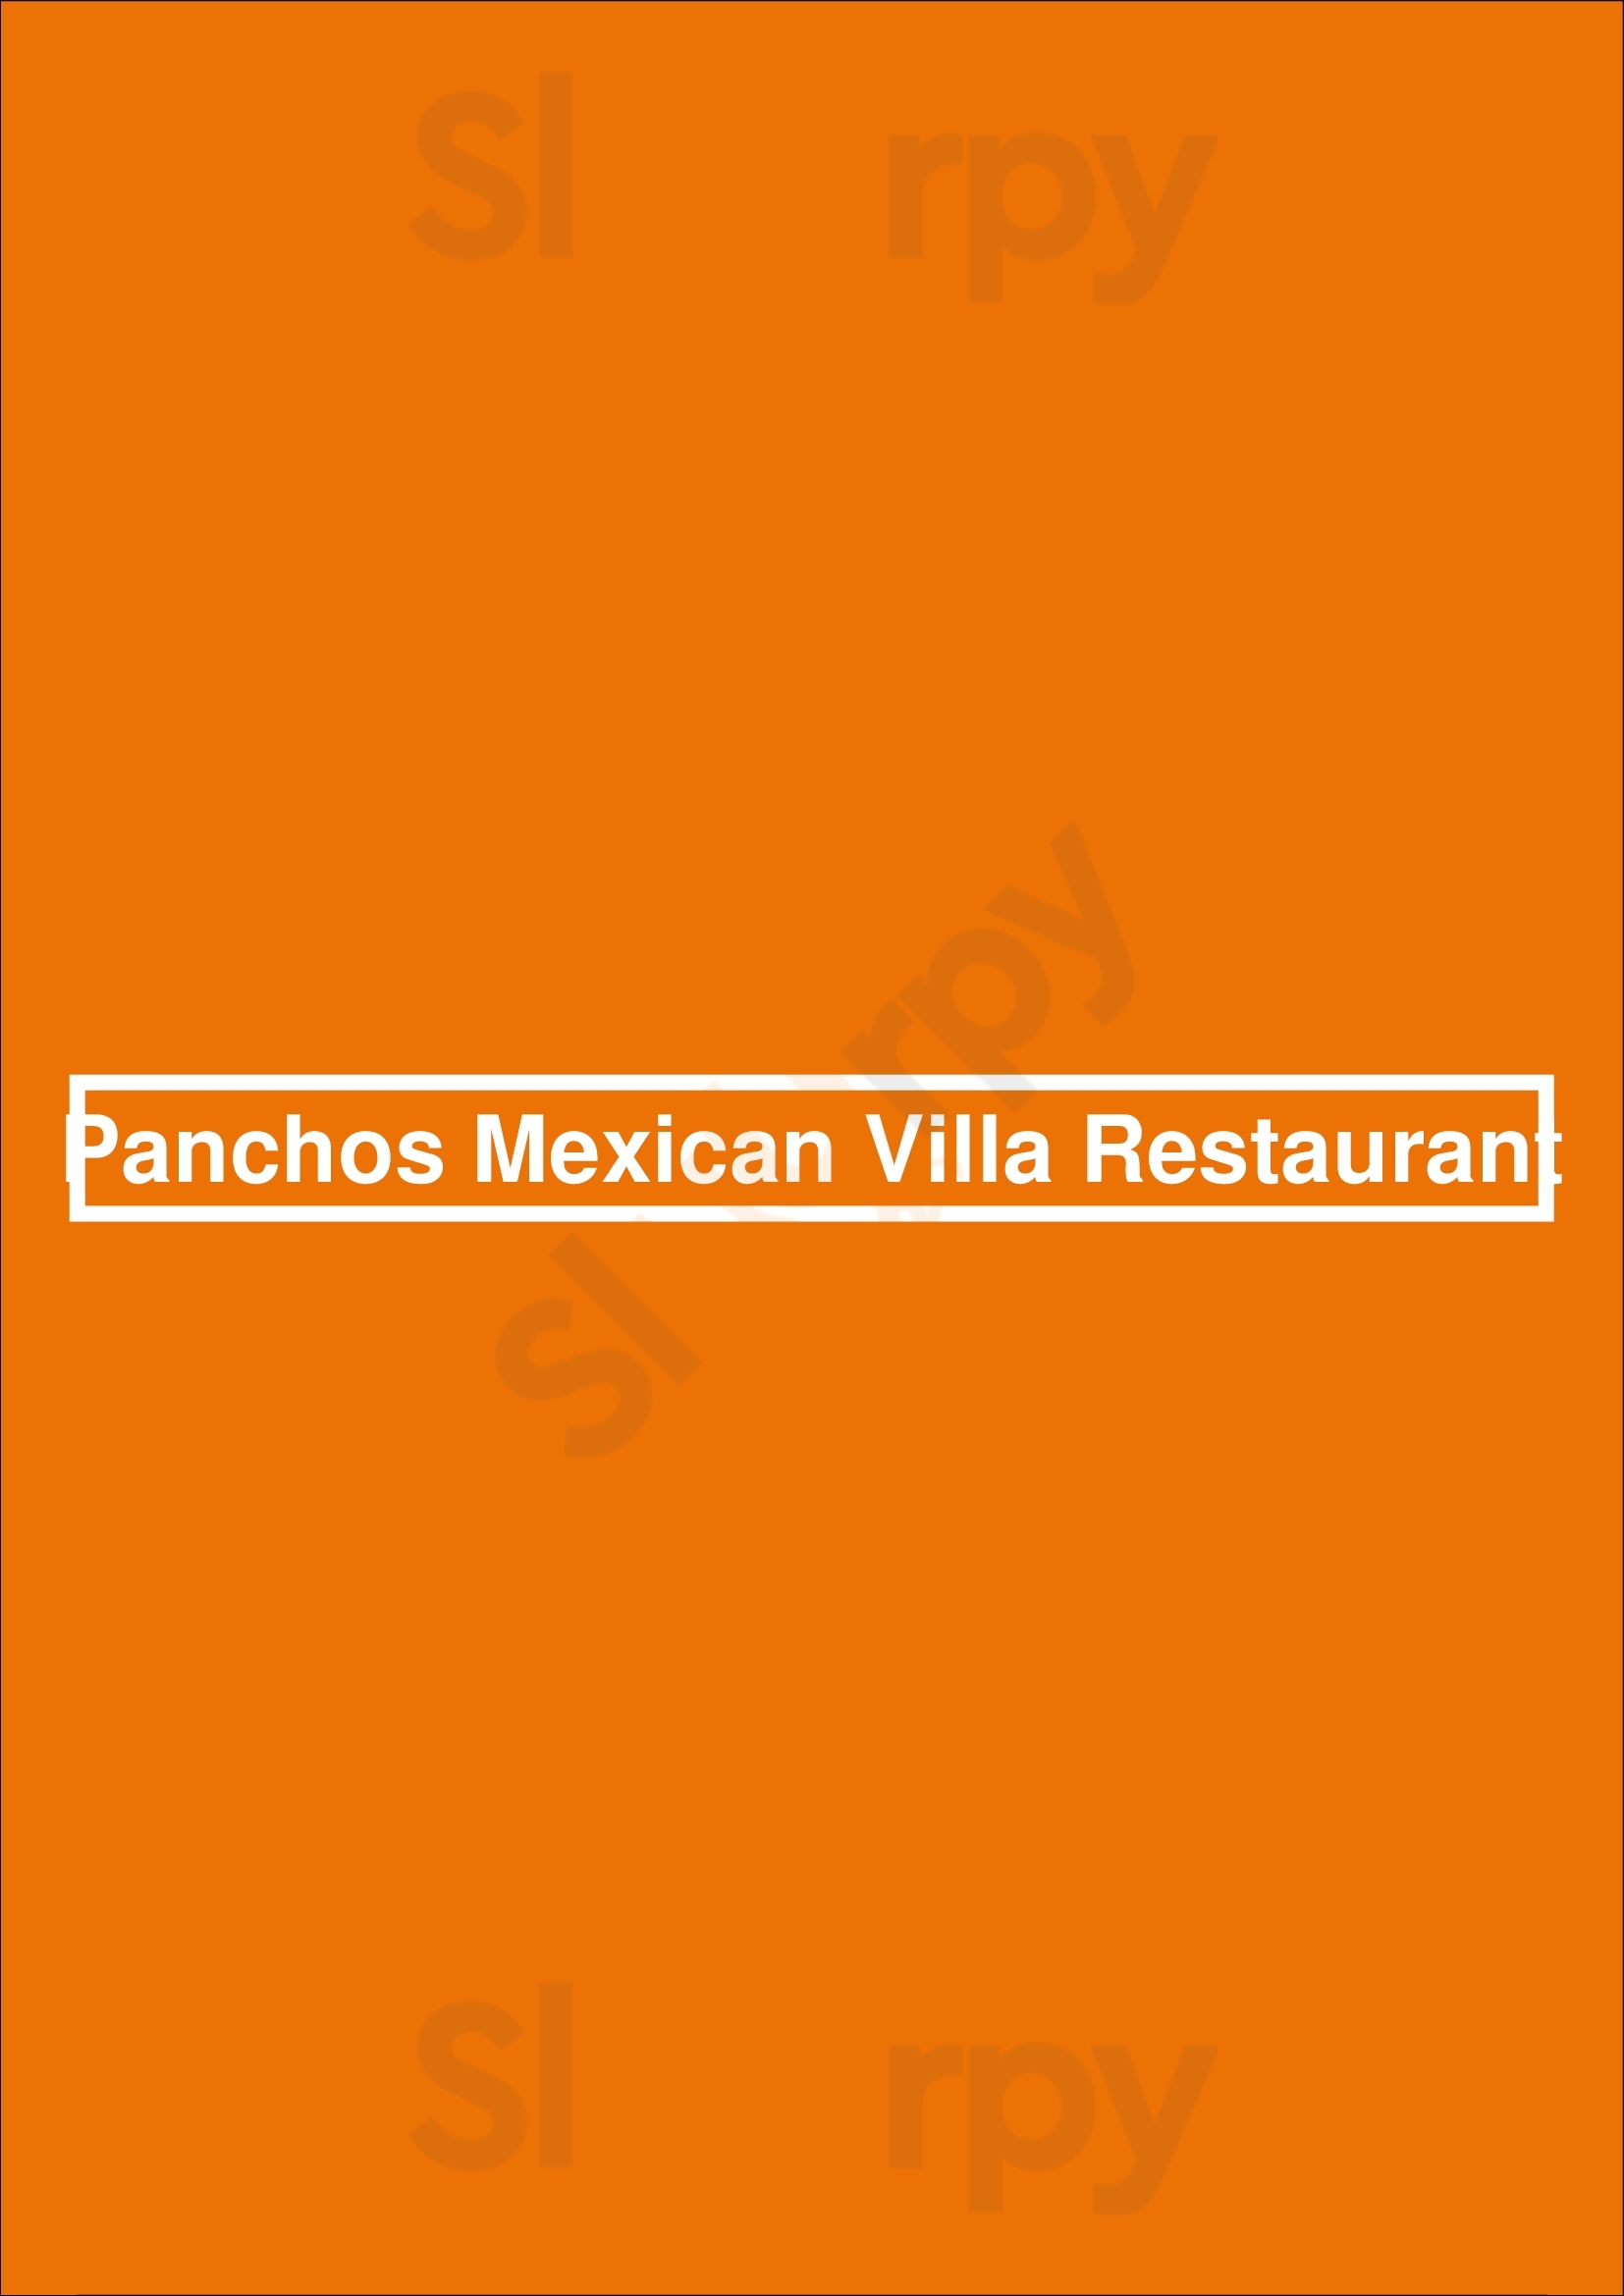 Pancho's Mexican Villa Restaurant East Victoria Park Menu - 1